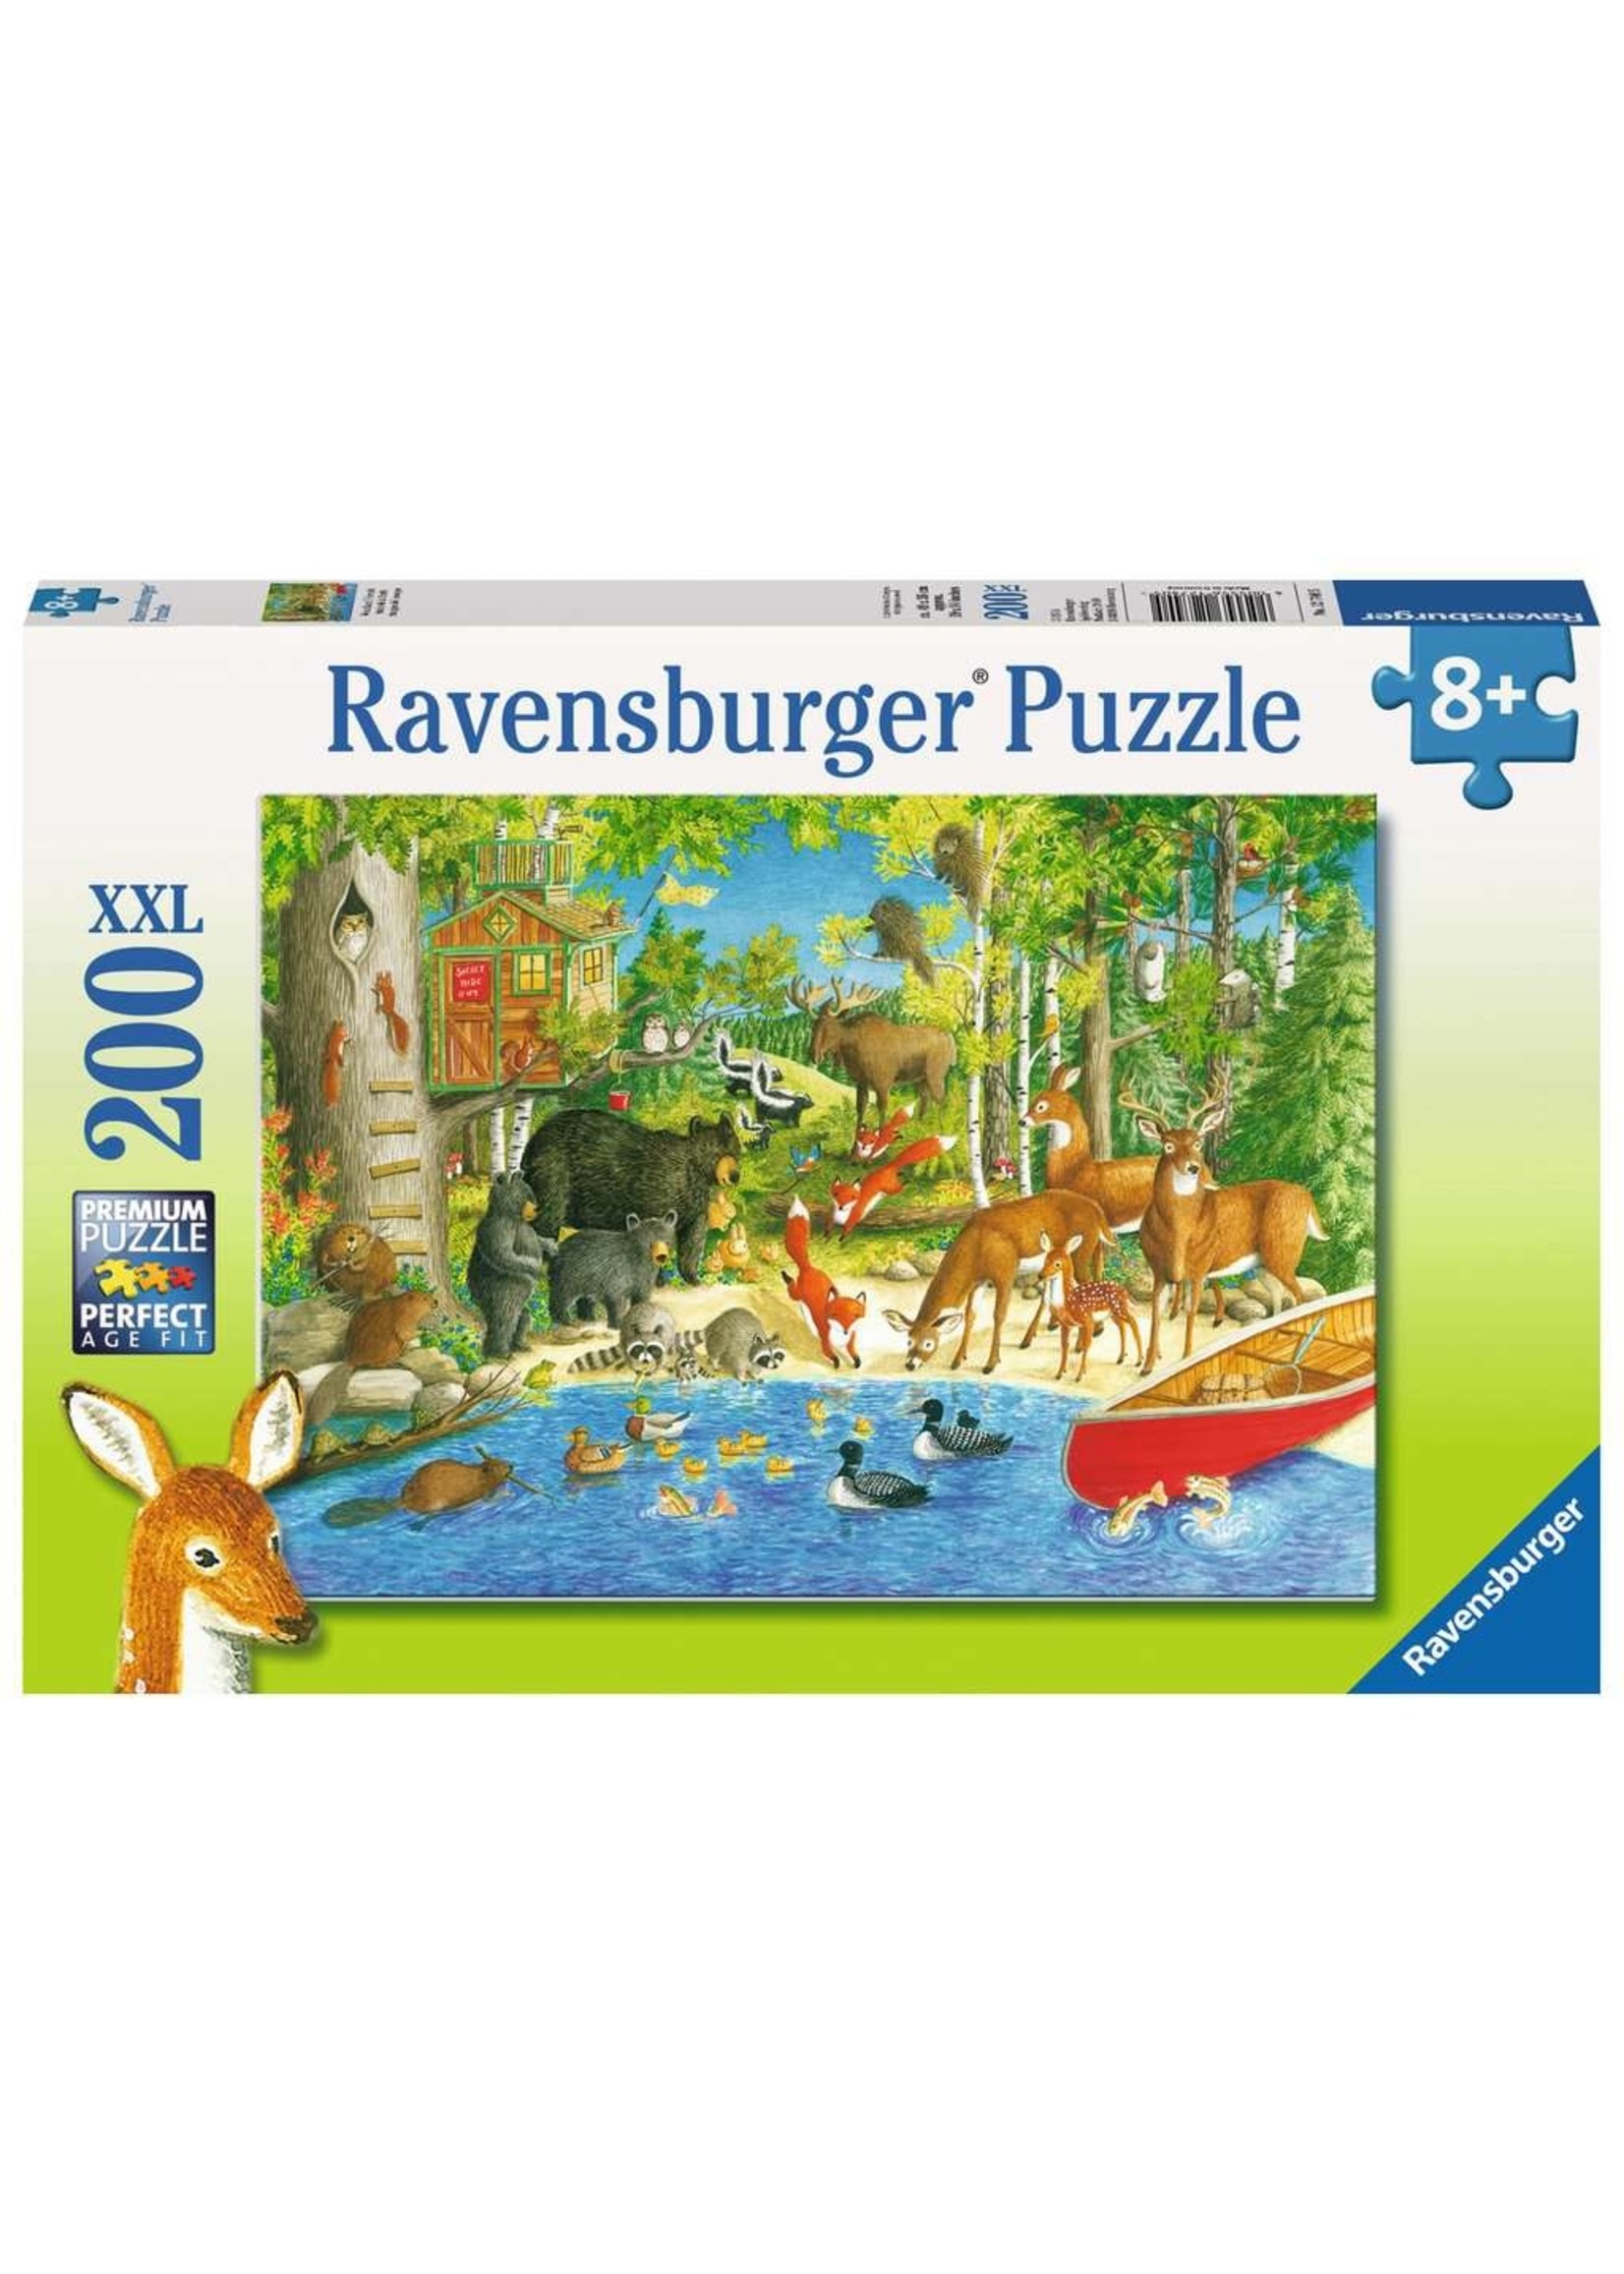 Ravensburger Woodland Friends - 200 Piece Puzzle